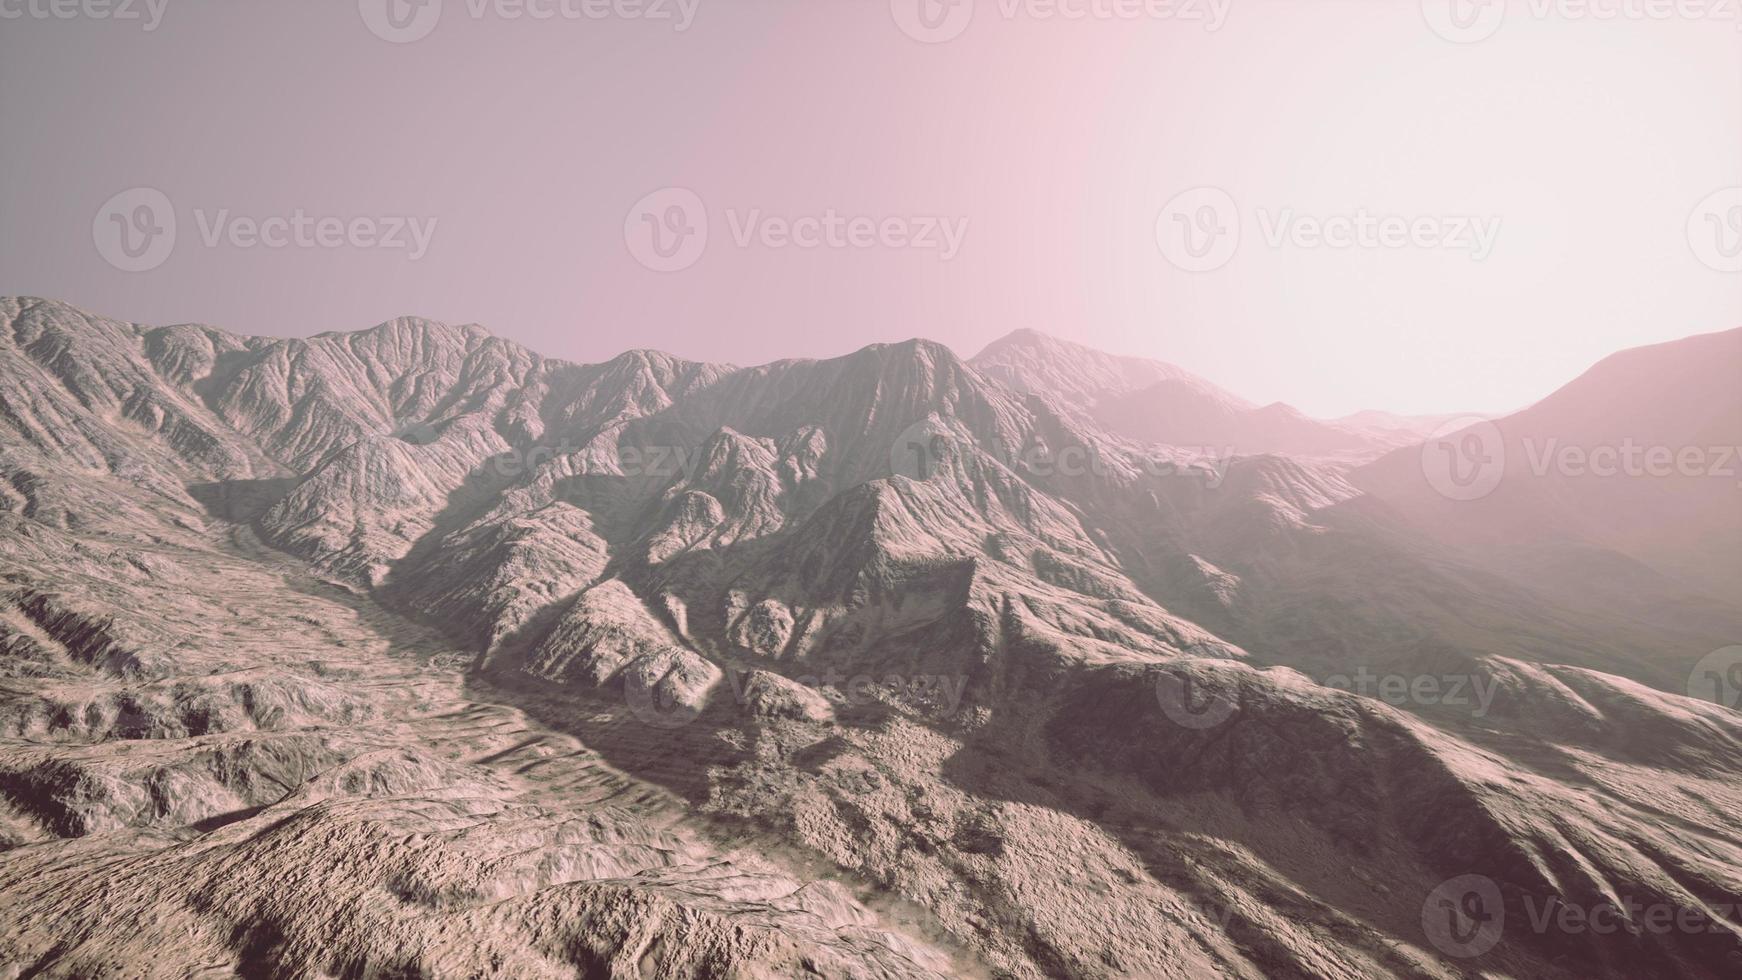 vista das montanhas afegãs no nevoeiro foto